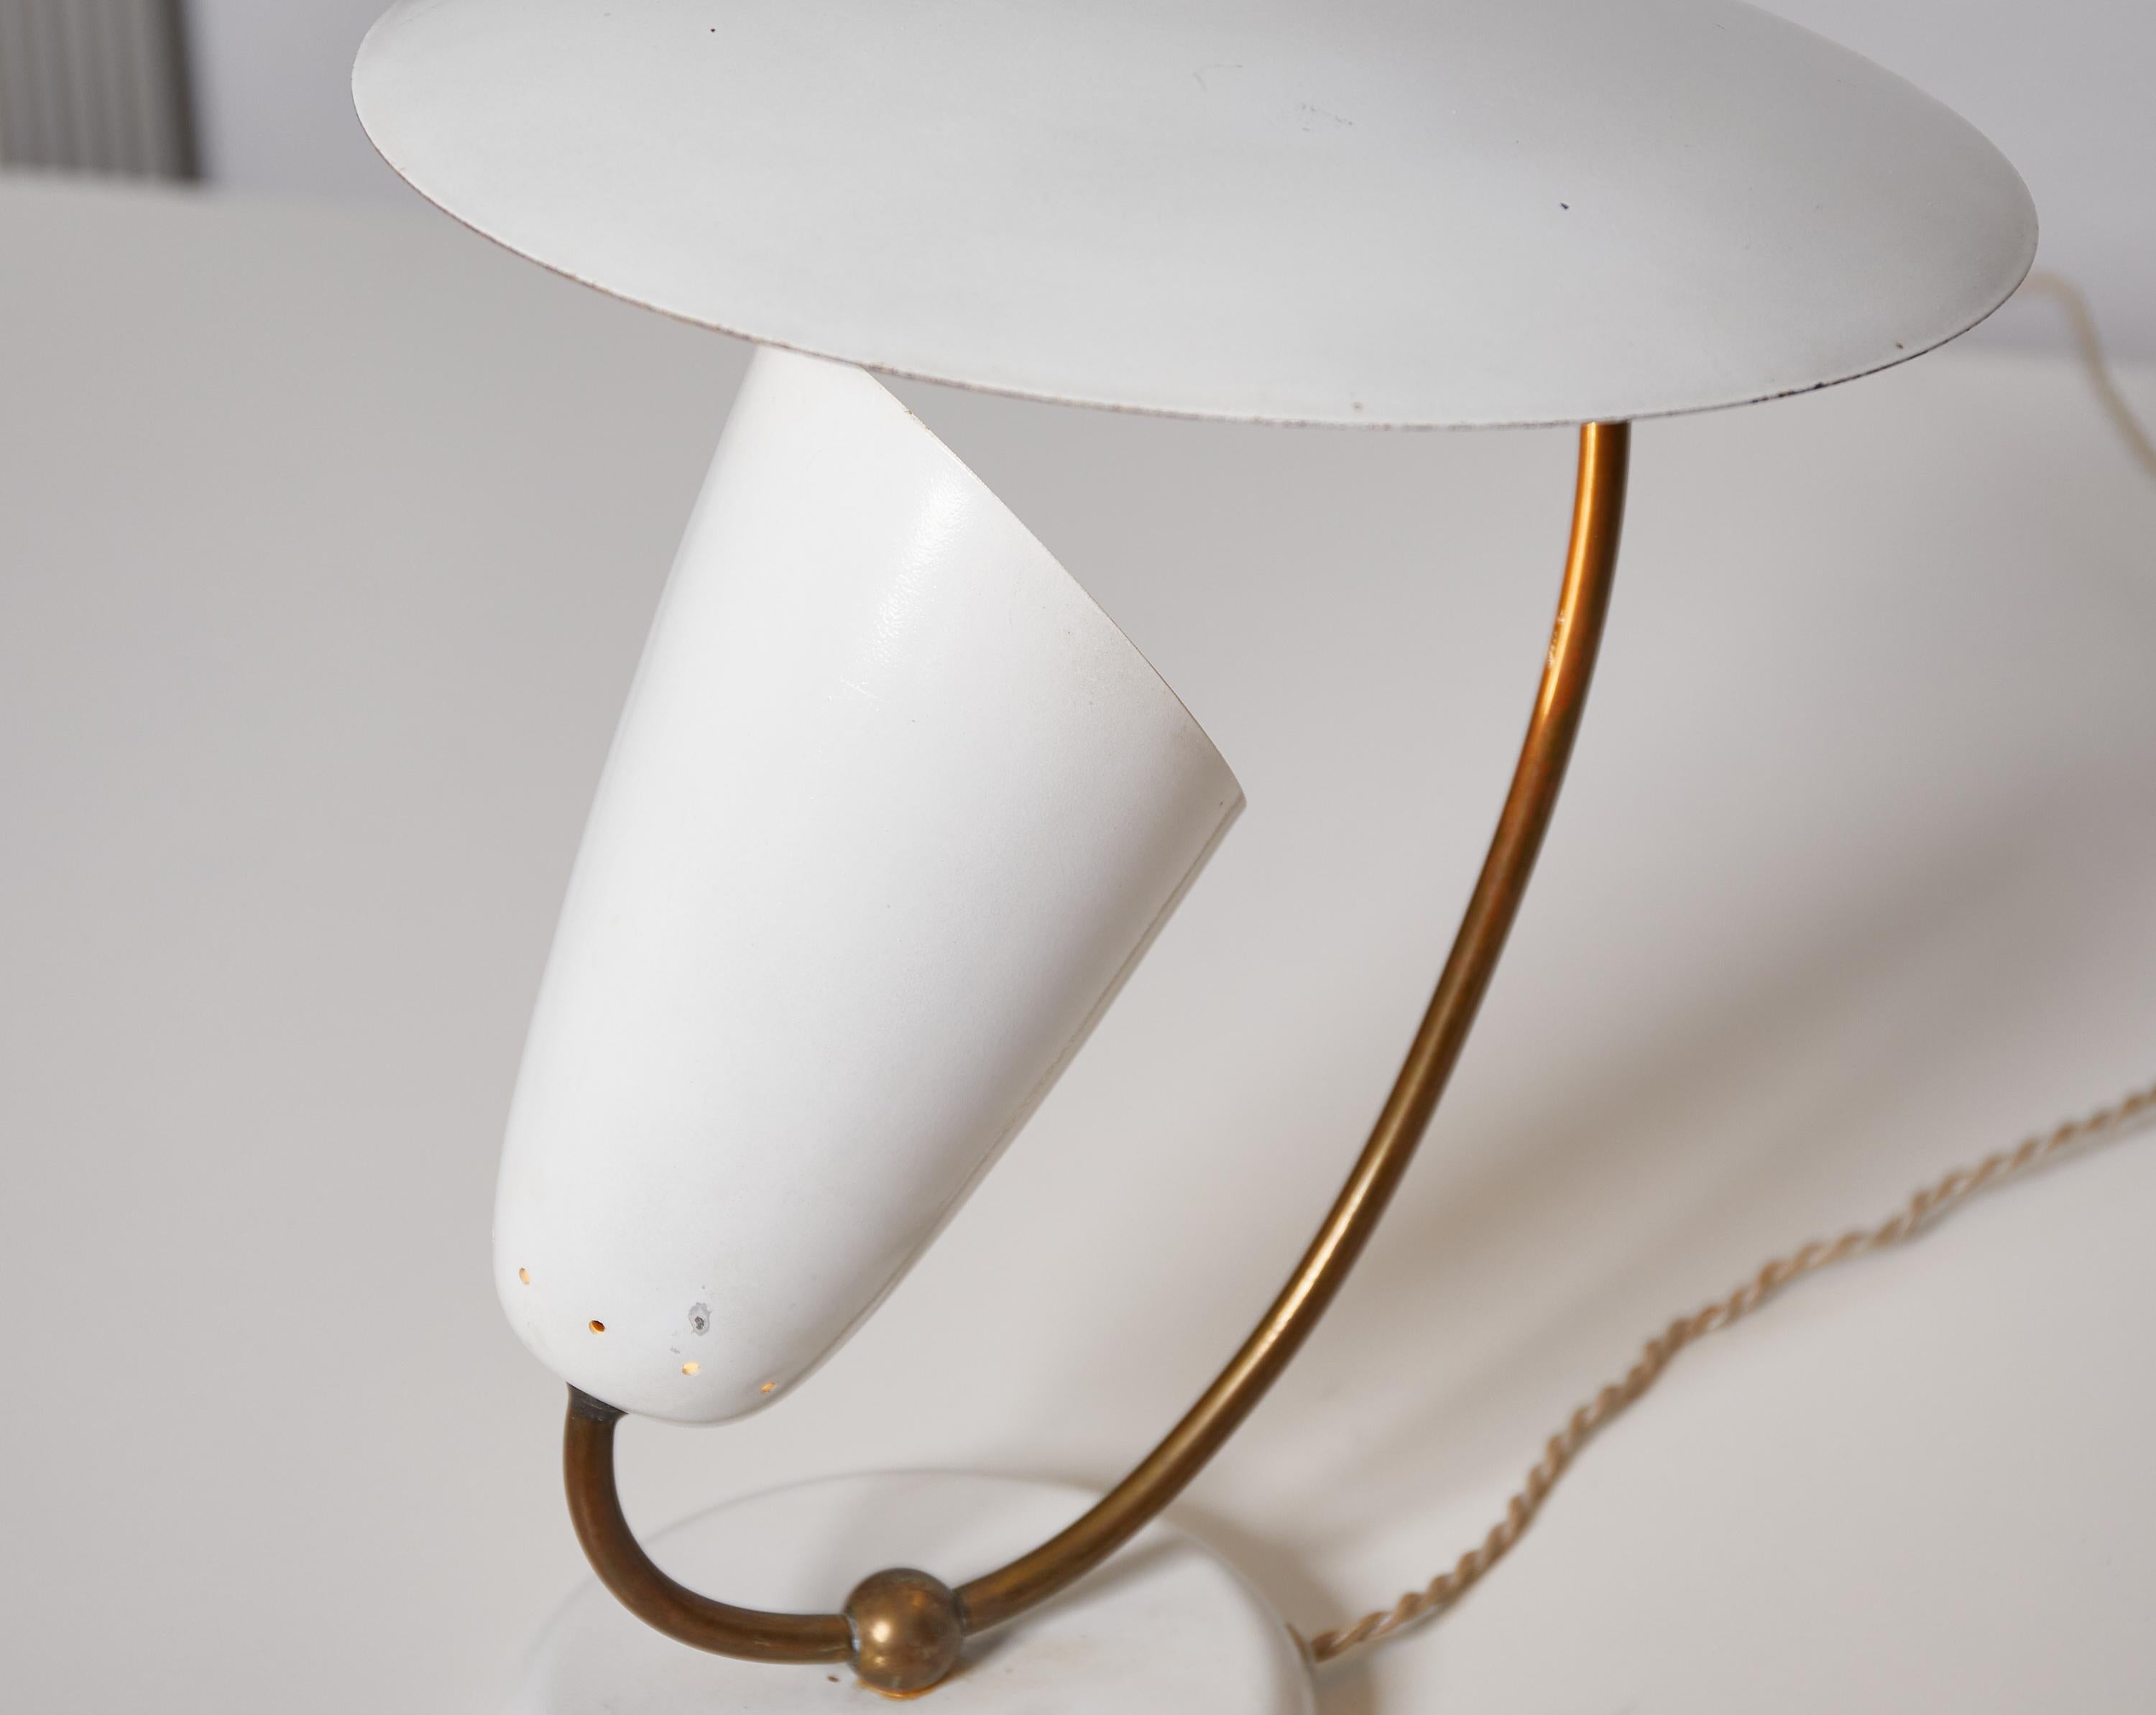 Swiss Brass and Enameled Metal Table Lamp, Stilnovo Inspired, Switzerland, 1950